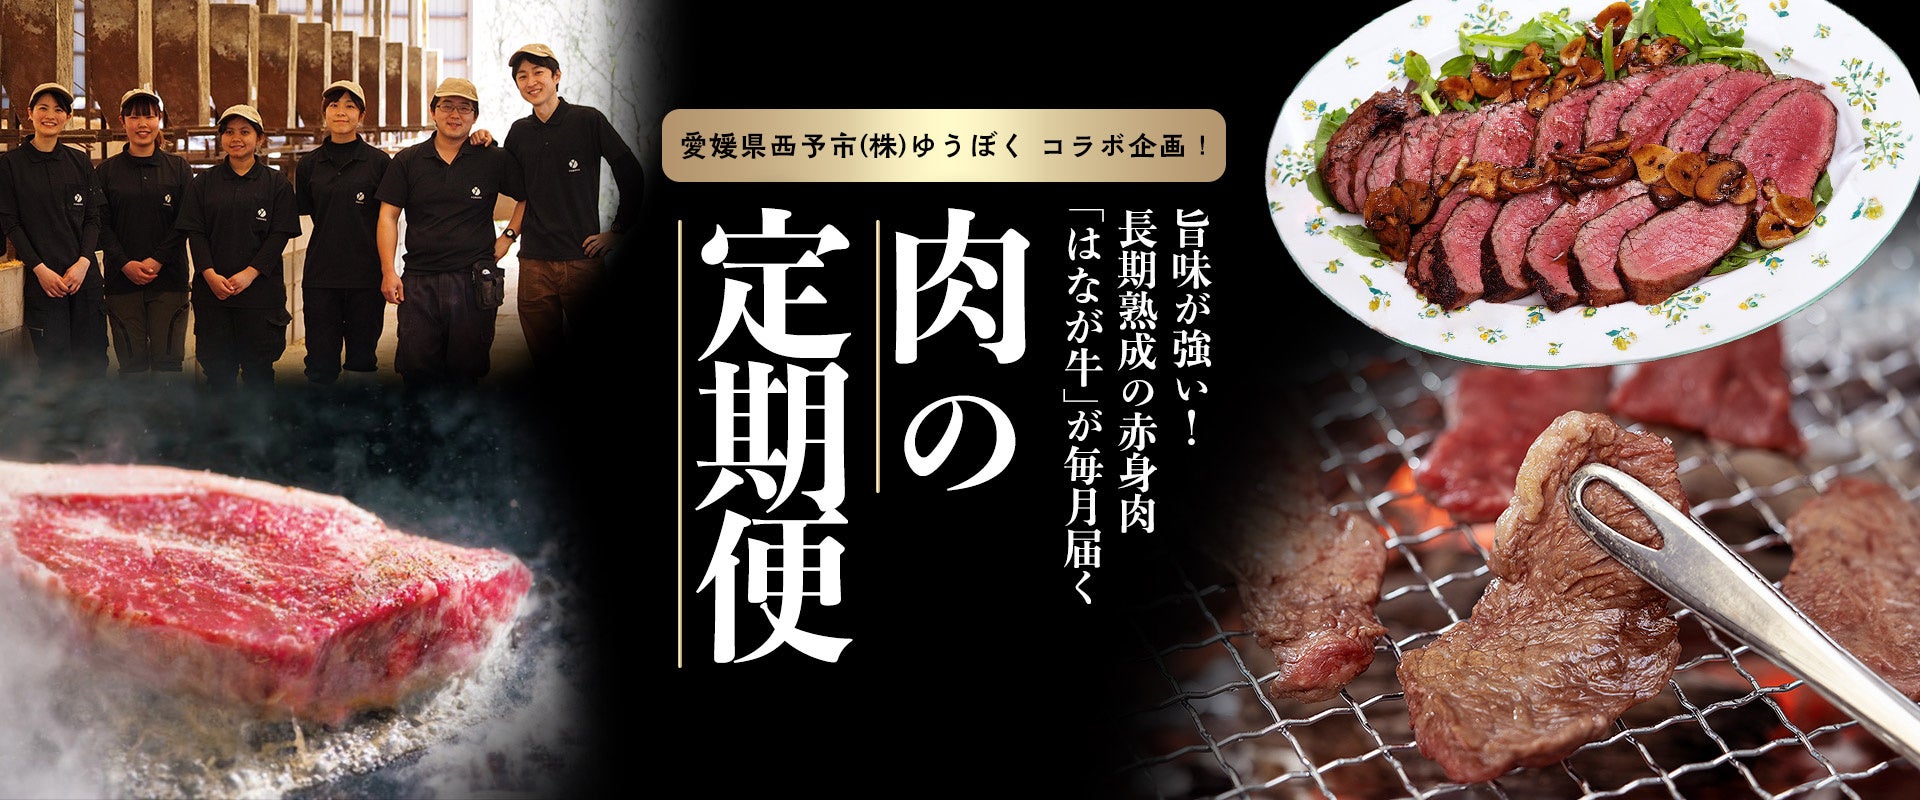 愛媛県西予市の「ゆうぼく」とのコラボで登場！長期熟成の赤身肉「はなが牛」を毎月お届けする「肉の定期便」夏休み直前に届く７月・８月のテーマは焼肉としゃぶしゃぶです。特別におまけ付き。